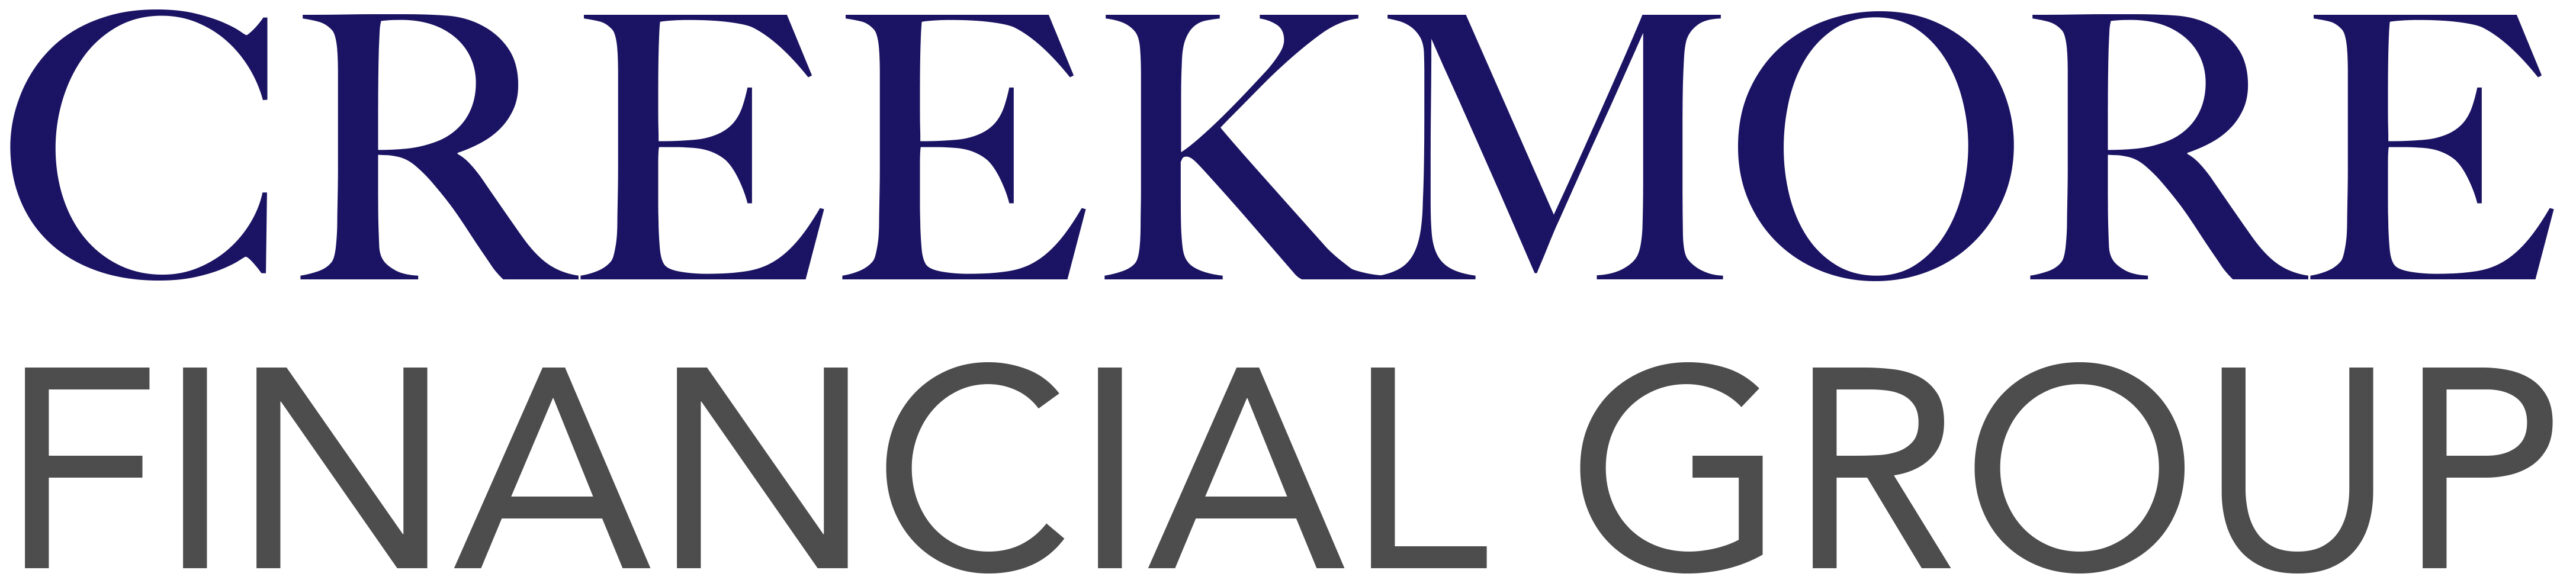 Creekmore Financial Group logo